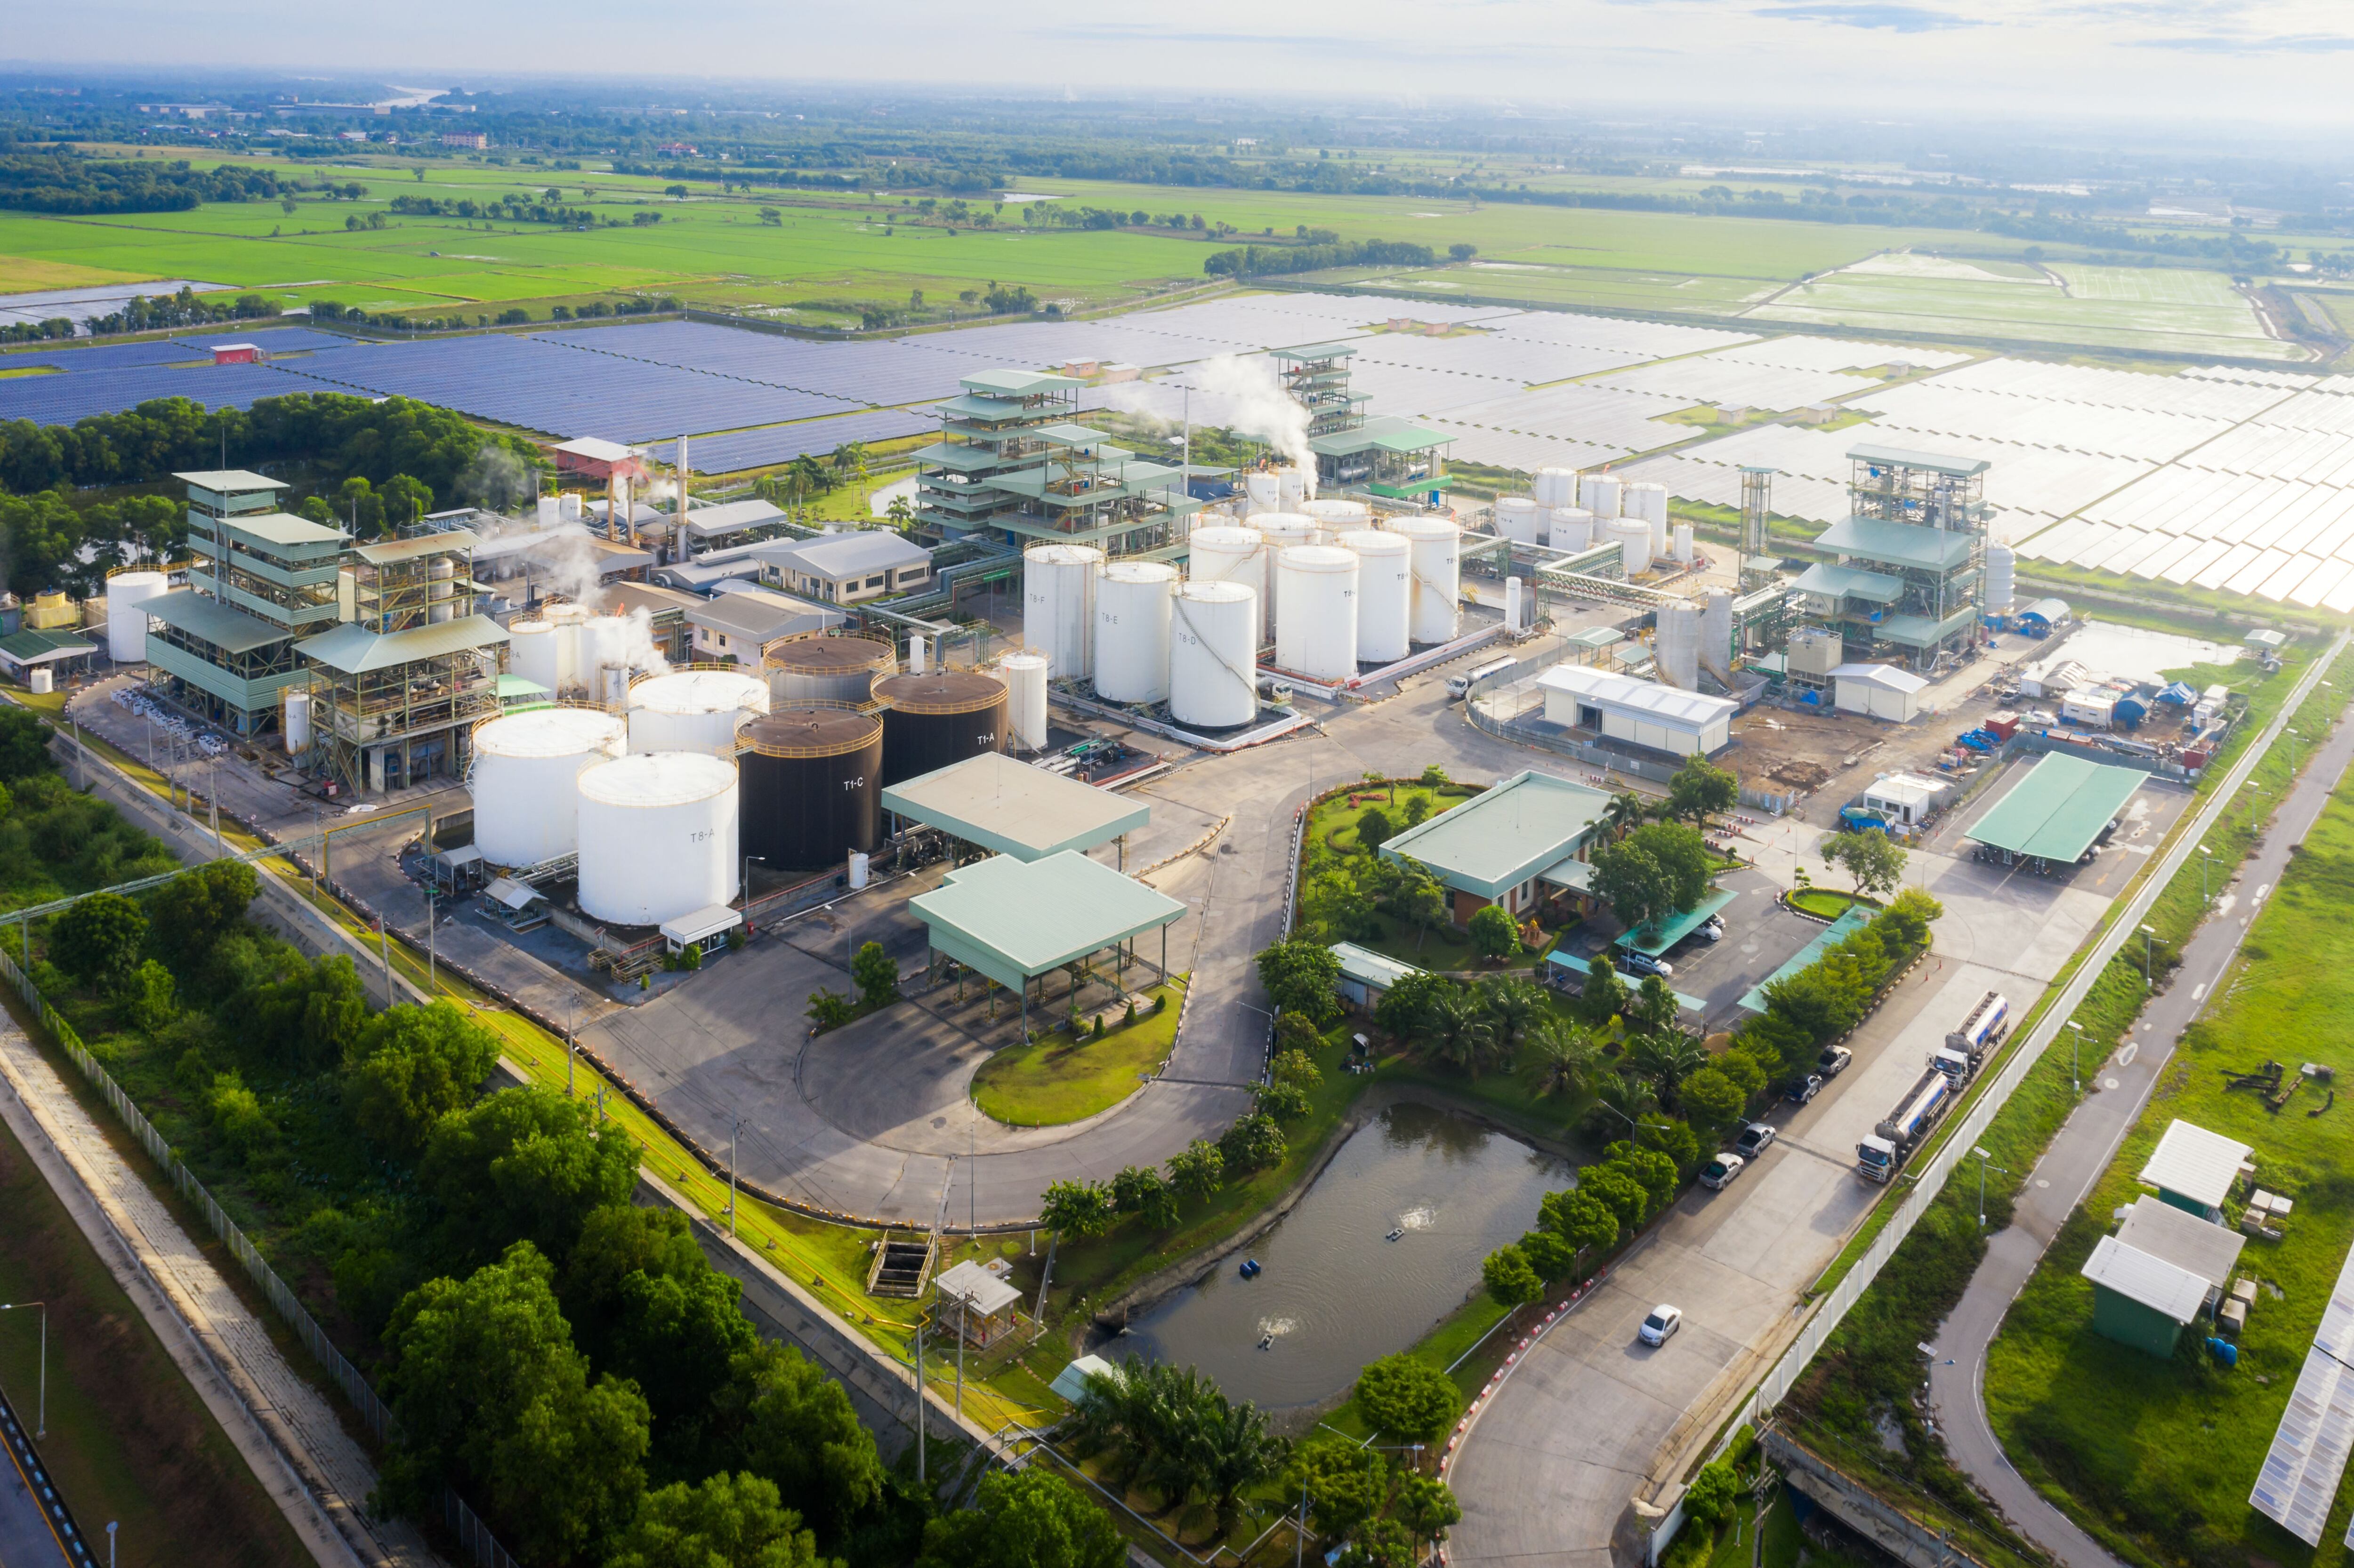 Foto aérea de una zona industrial que muestra una refinería de petróleo con tanques de almacenamiento junto a una estación de energía solar para suministro de energía renovable.